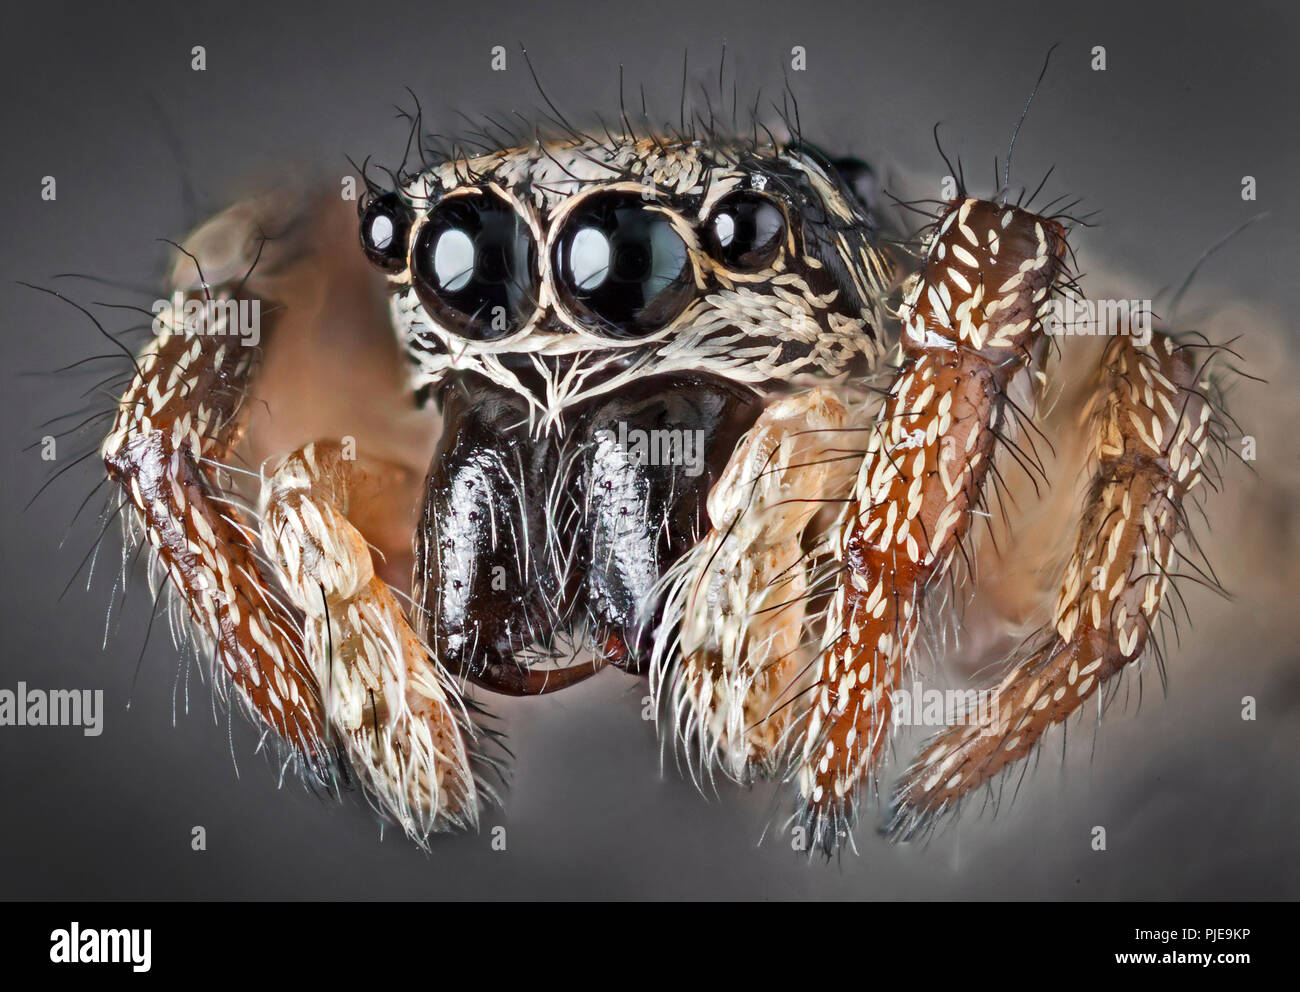 Zebra zurück Salticus scenicus) Spider (hohe makro Ansicht, Augen, Zähne Stockfoto